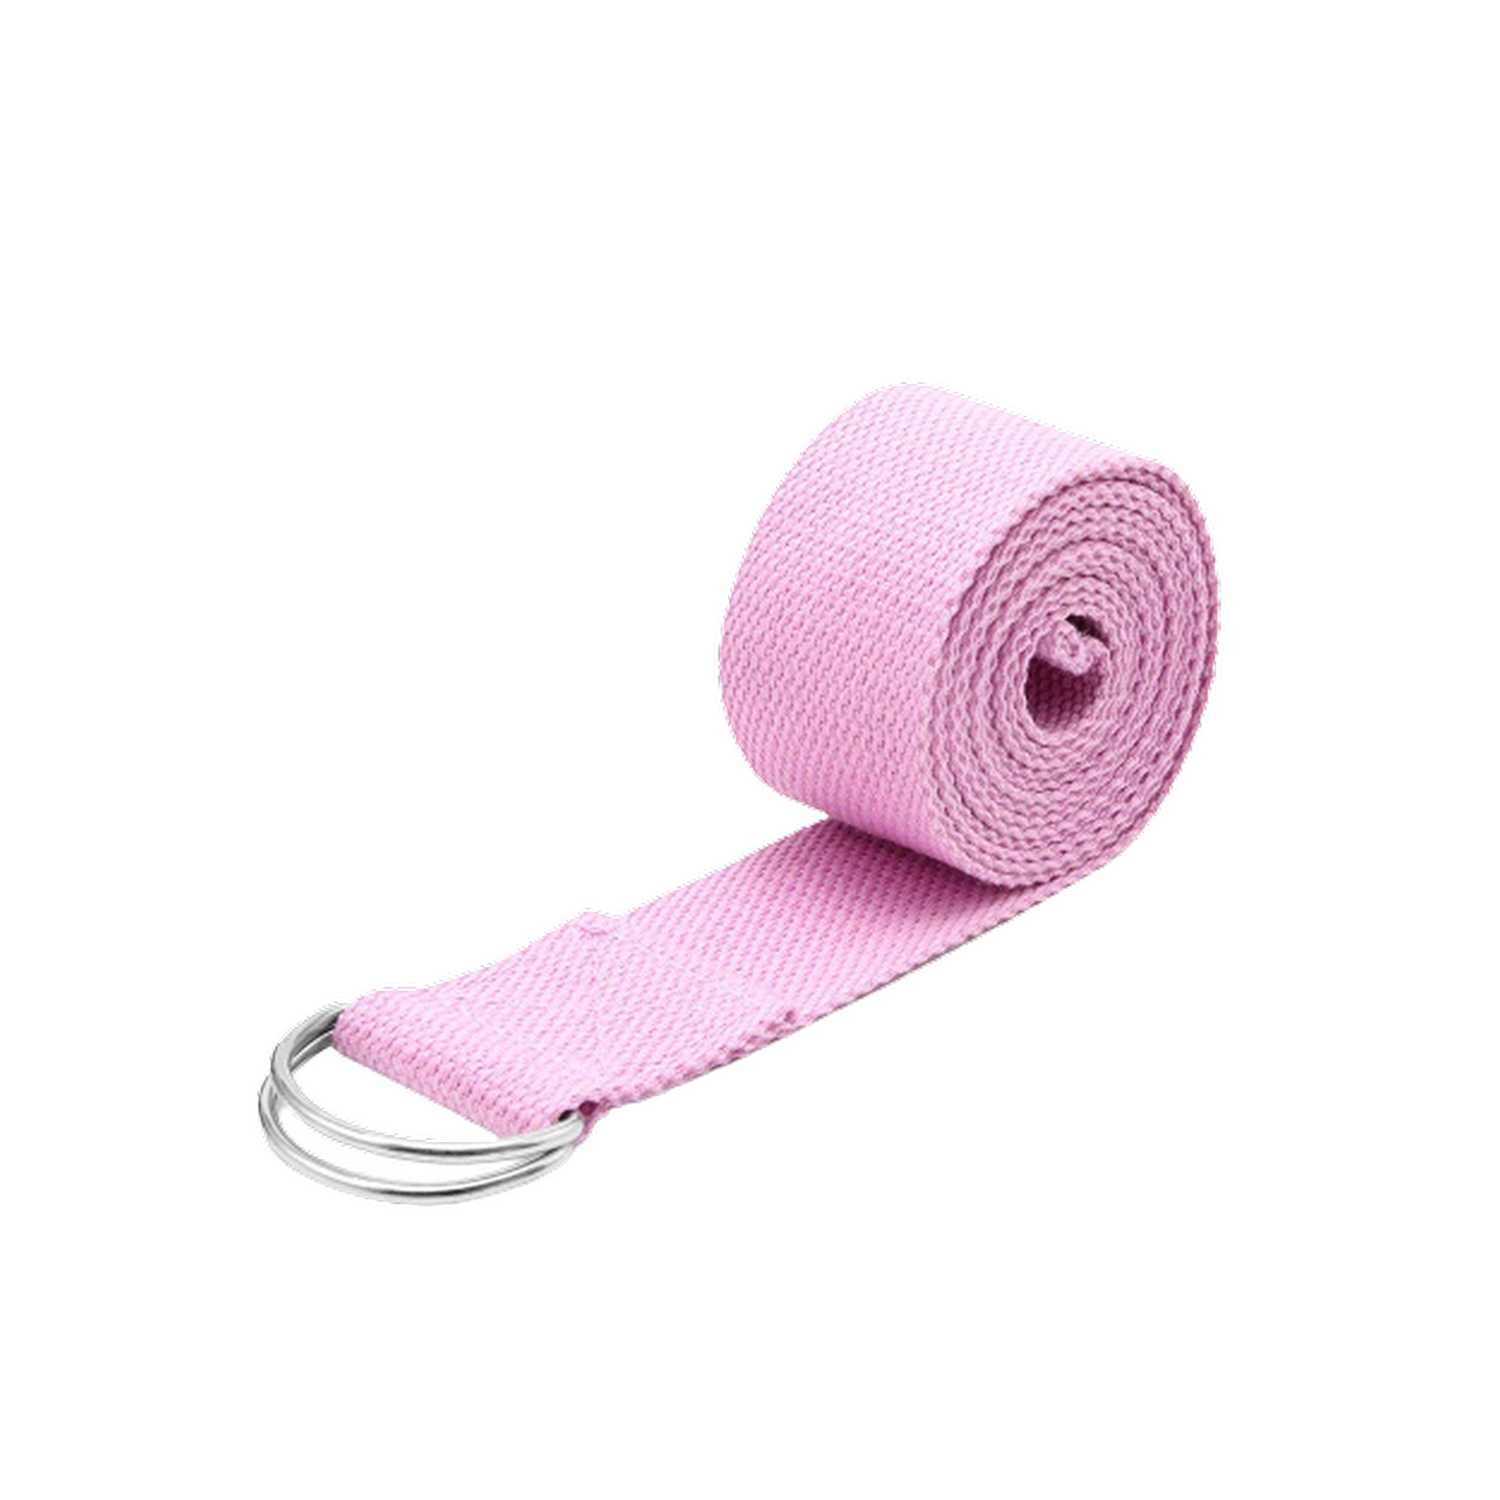 Тренировочный ремень Beroma хлопковый для йоги и растяжки 180х3.8 см розовый - фото 1